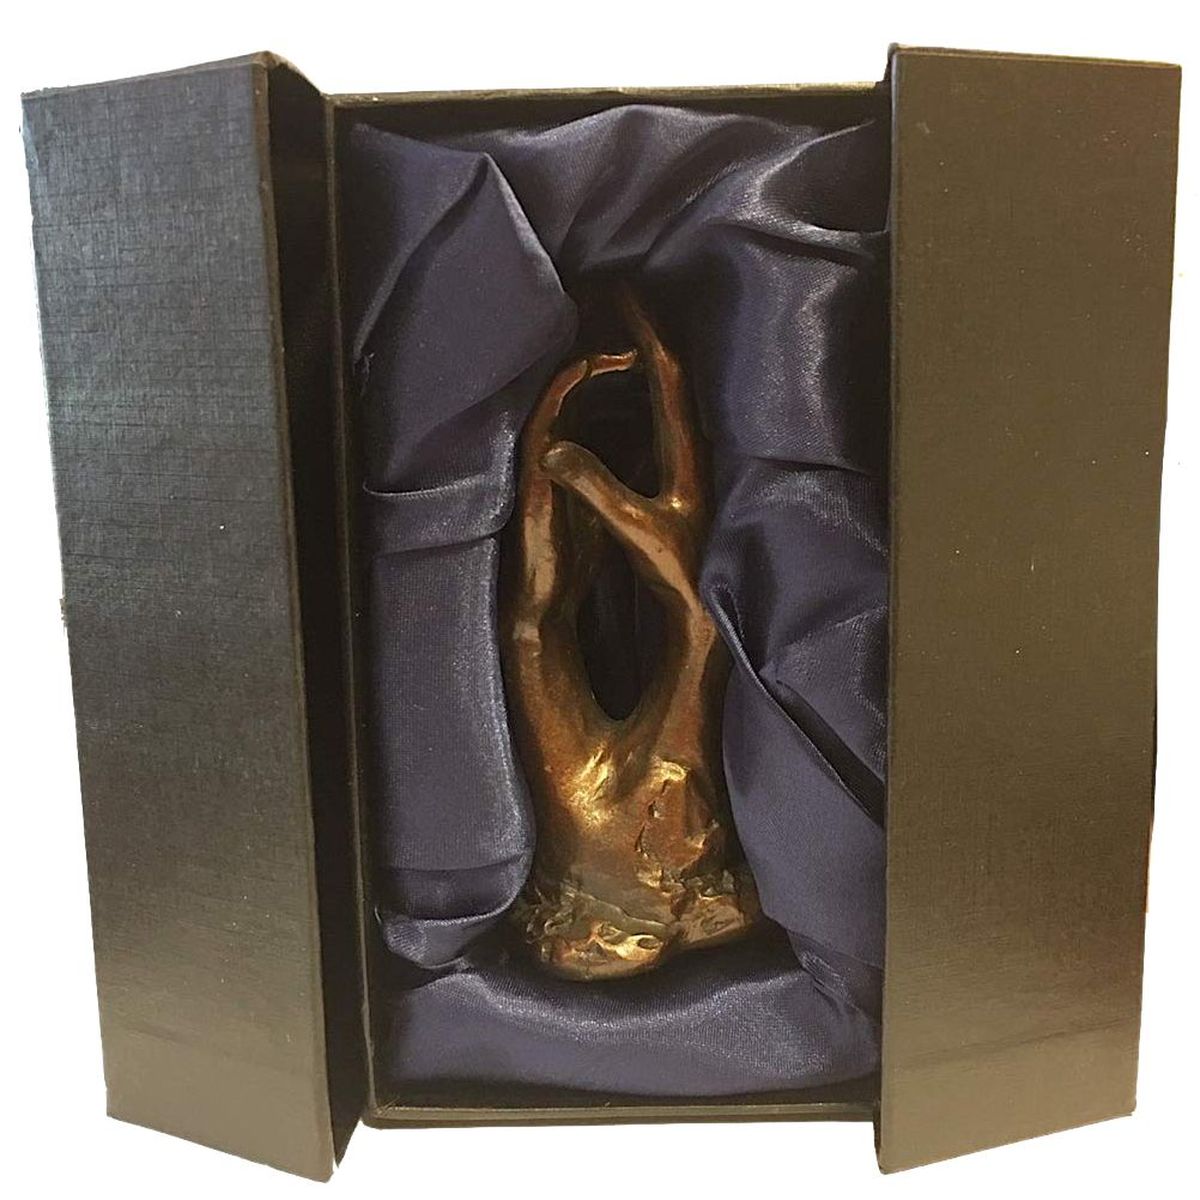 Figurine La Cathdrale de Rodin le secret 9.5 cm